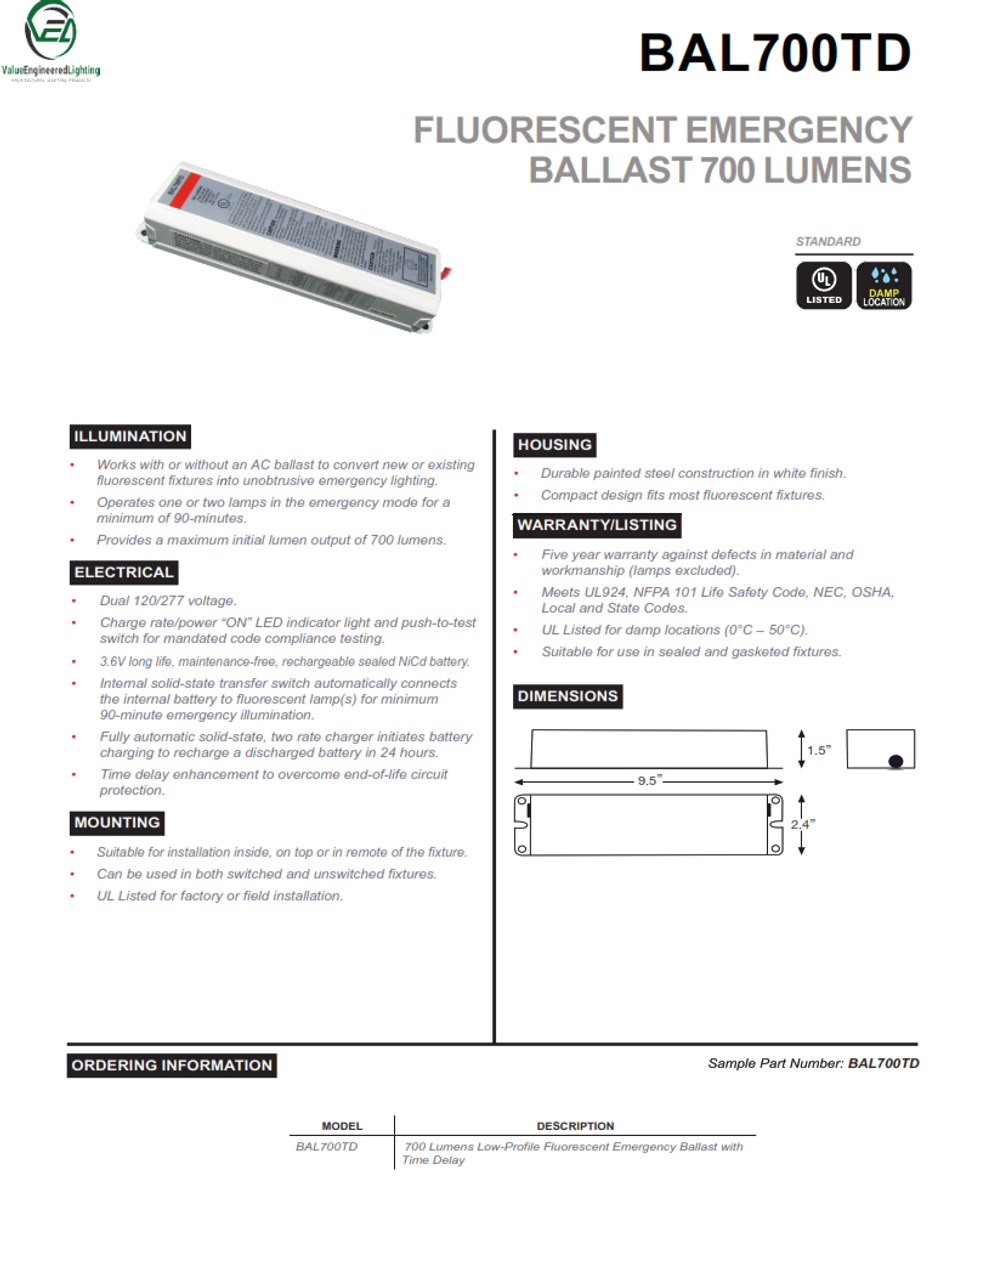 Fluorescent Emergency Ballast 700 Lumens